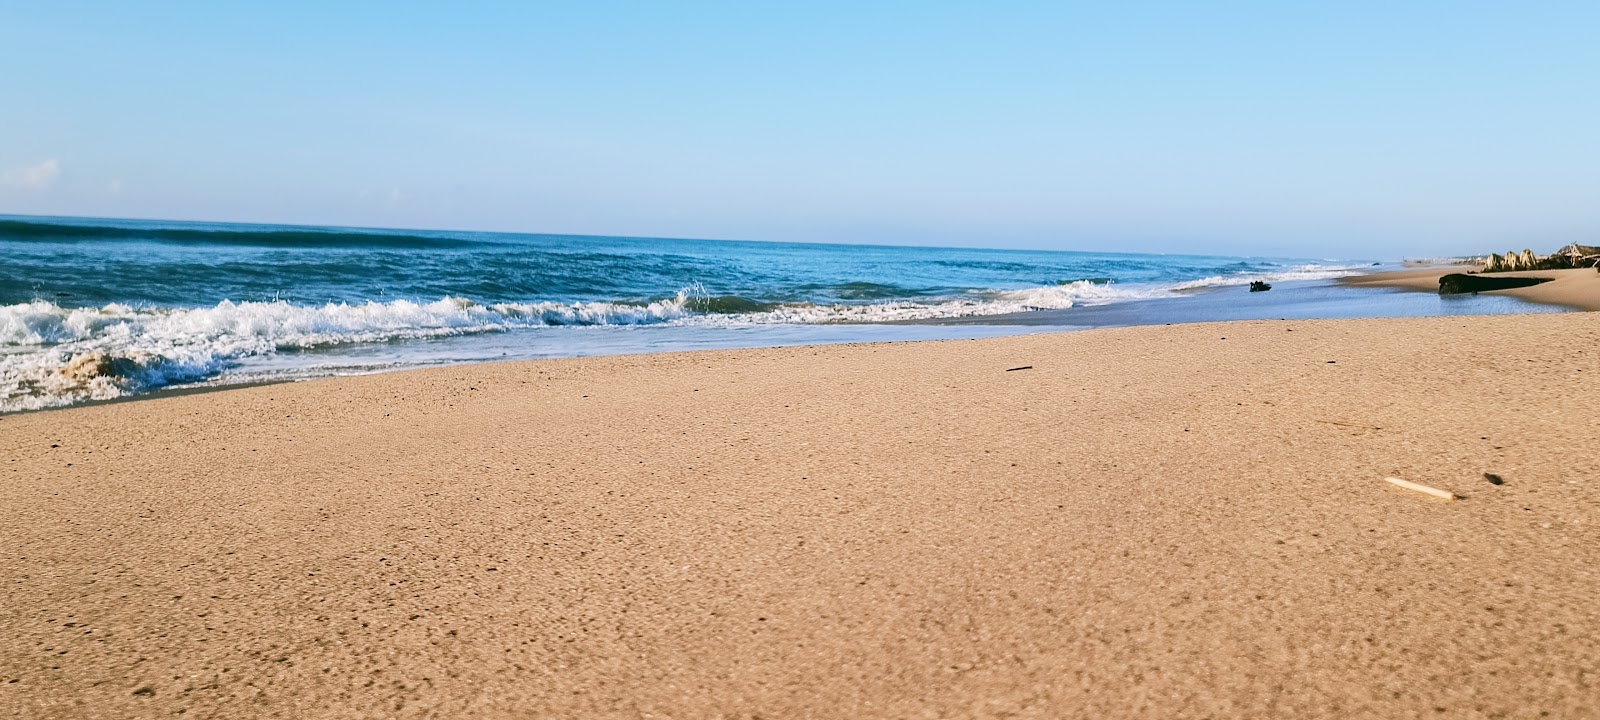 Fotografie cu Gurayyapeta Beach cu o suprafață de nisip strălucitor